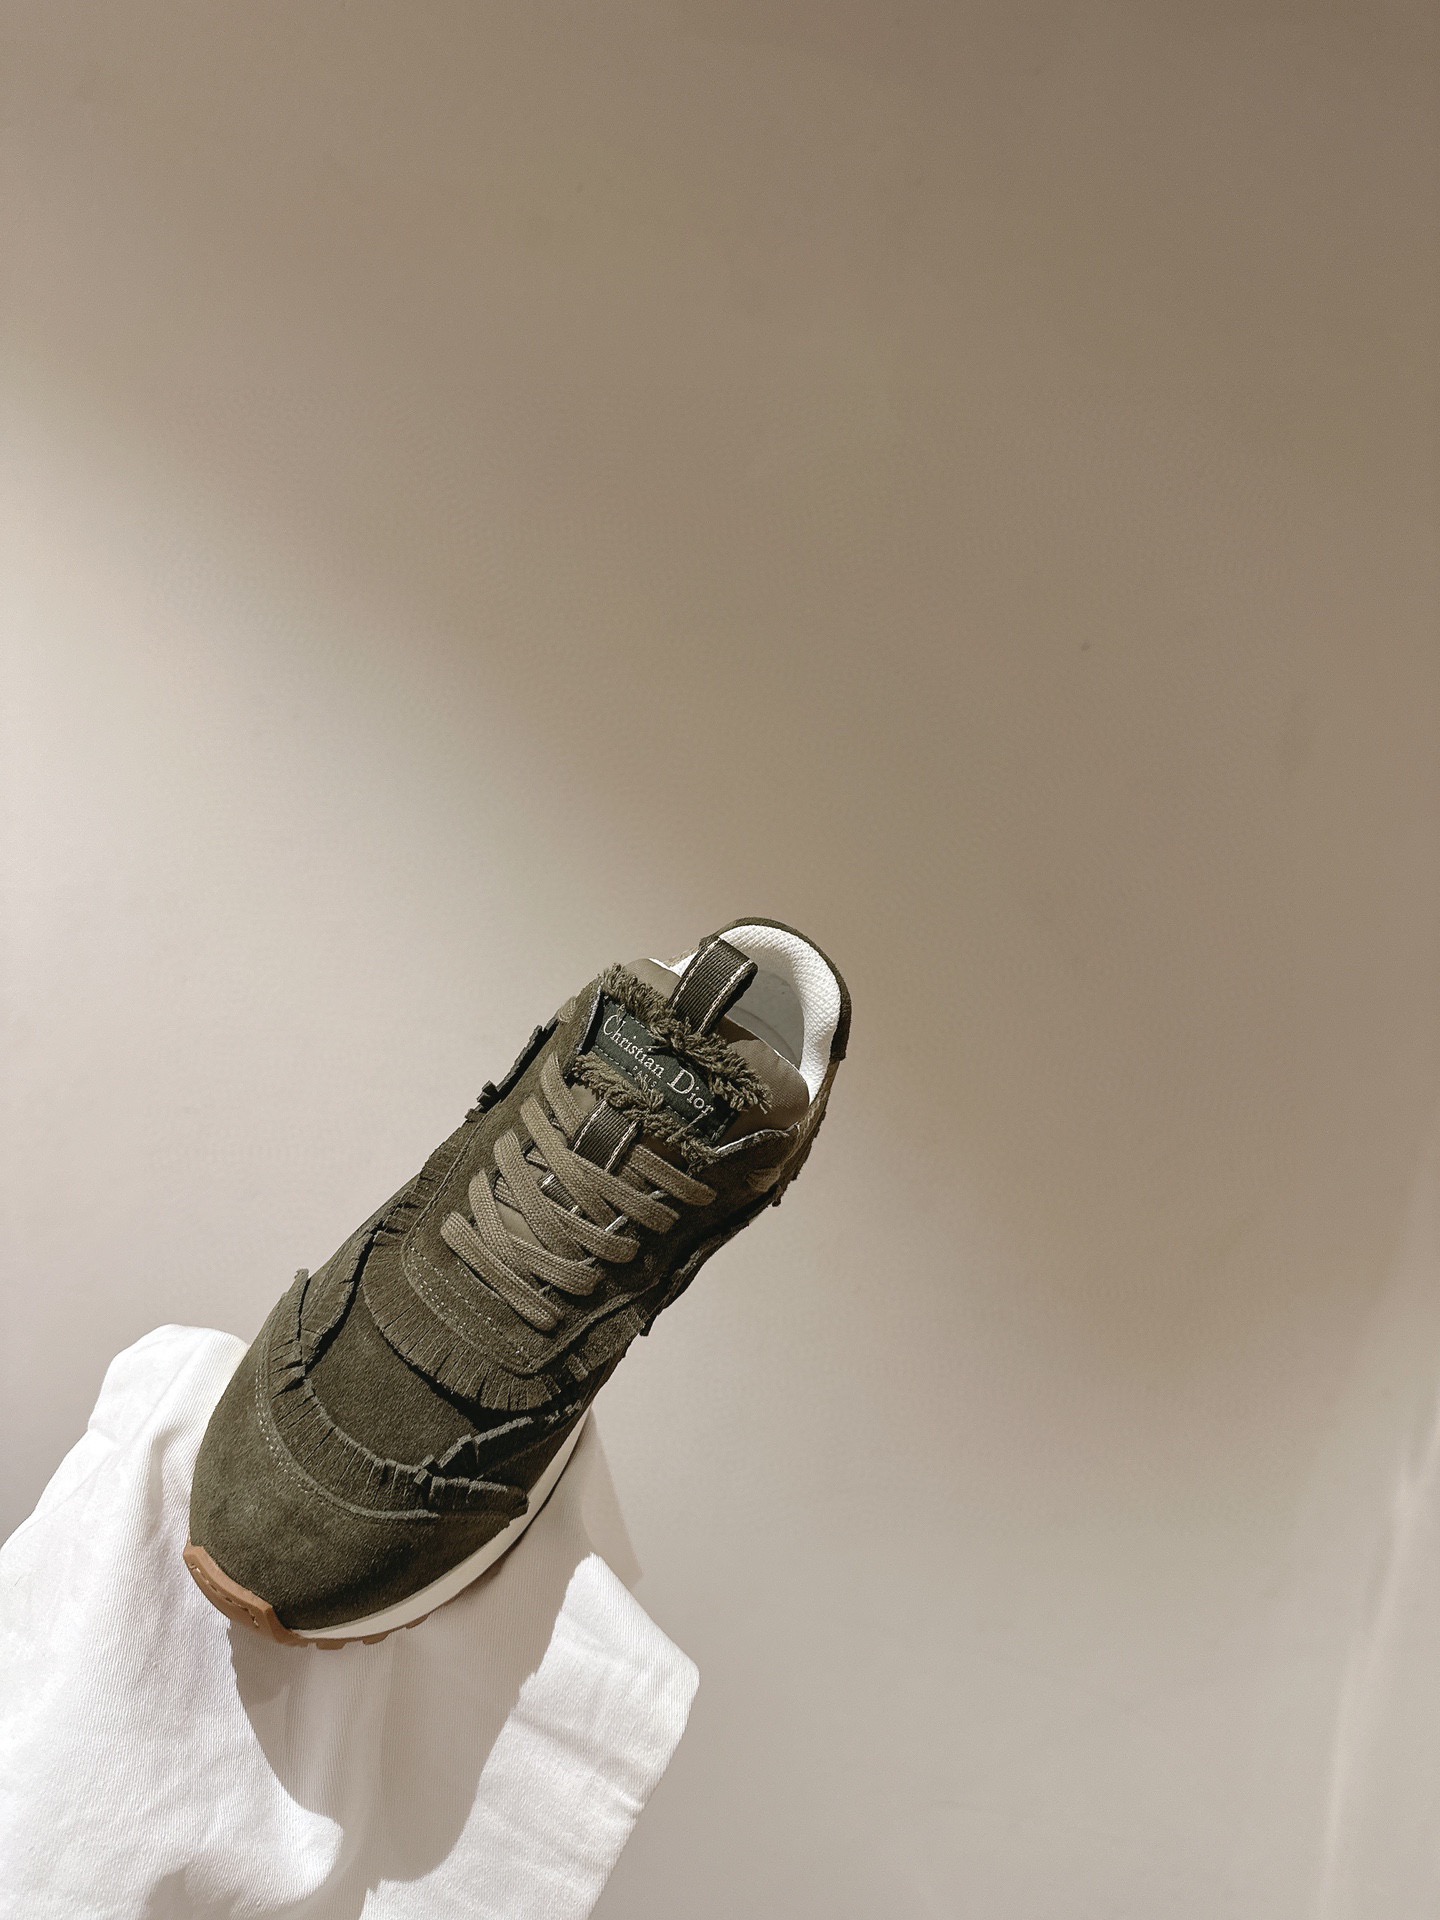 CestDior迪奥24早春新款全新休闲运动鞋以绒面牛皮革和网眼织物制作轻盈透气侧边的CD字母非常有Di